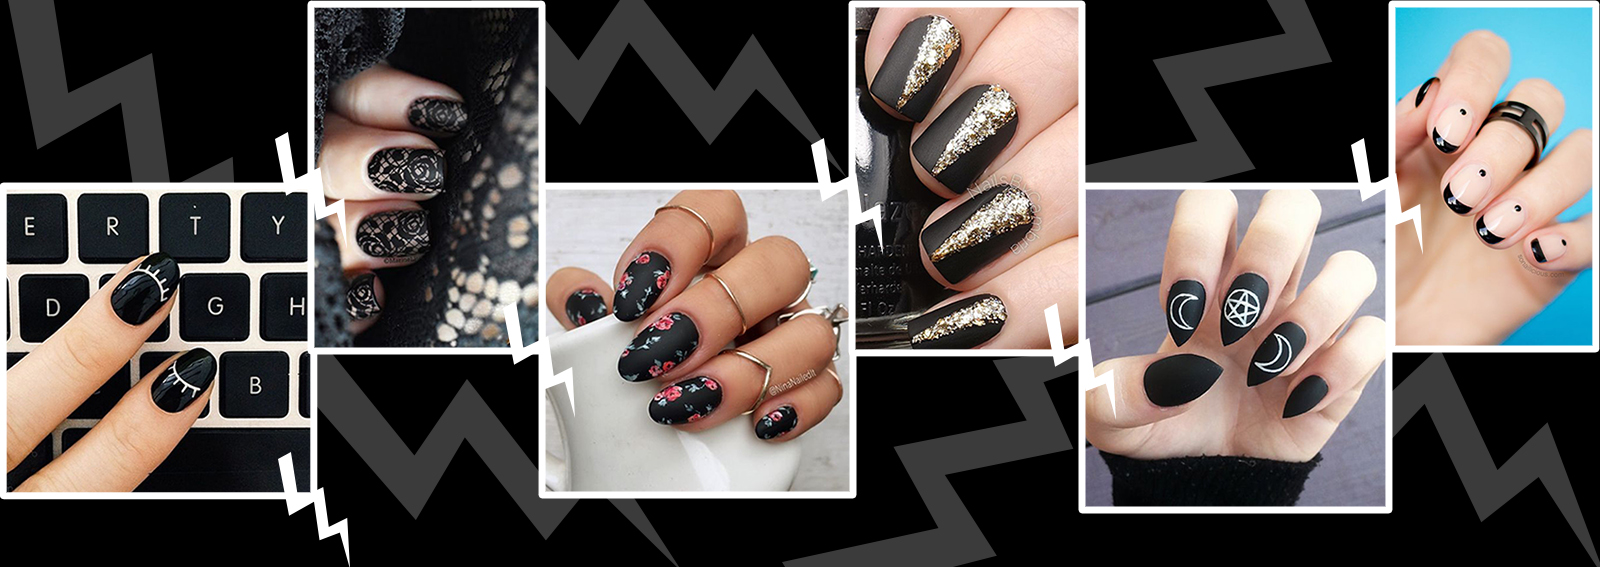 Nail art black, unghie nere per una dark manicure